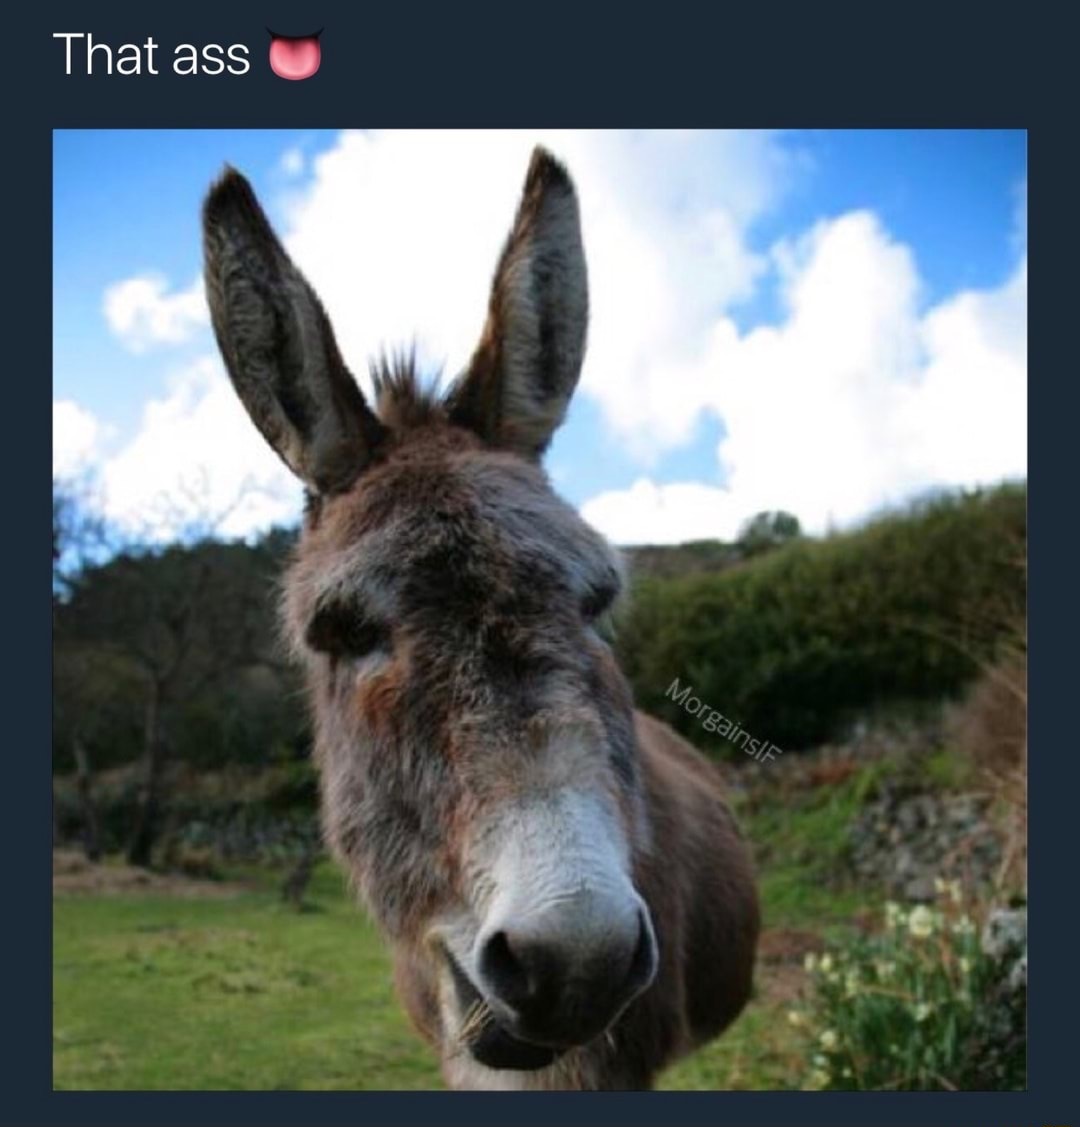 floppy donkey dick